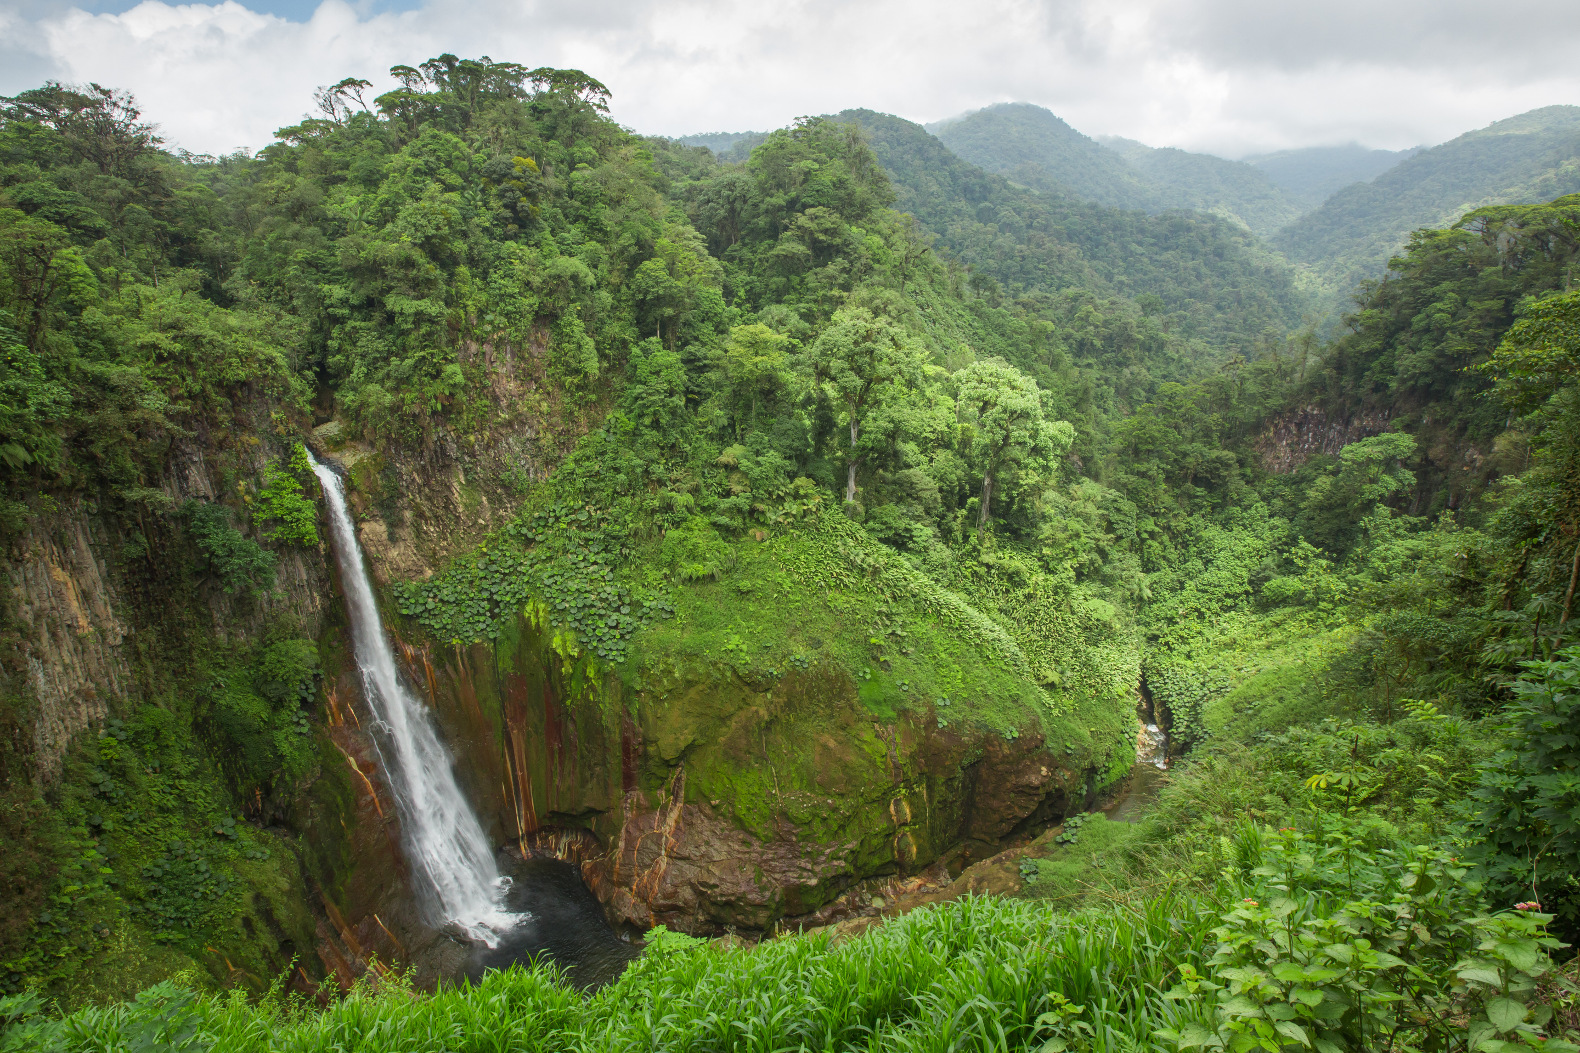 Costa Rica's beautiful jungle